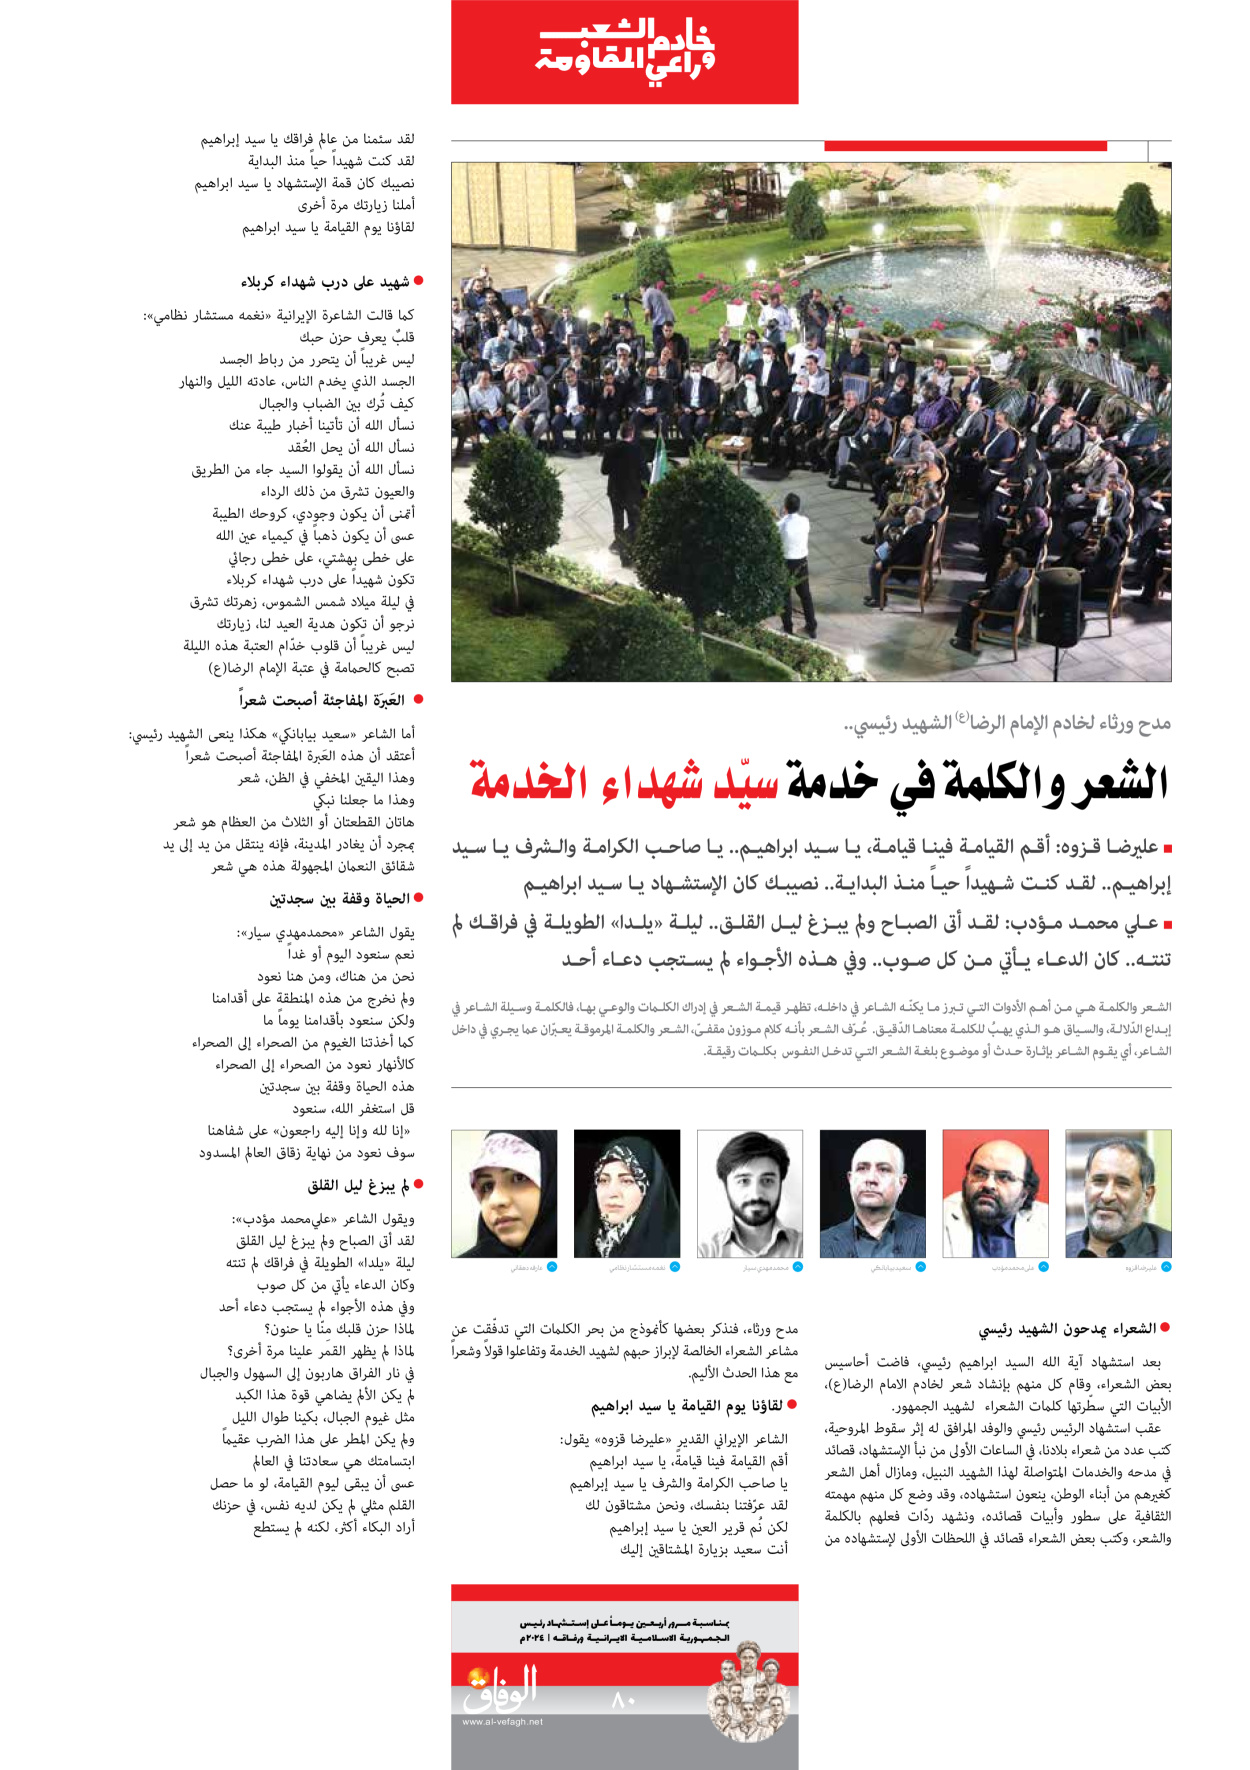 صحیفة ایران الدولیة الوفاق - ملحق ویژه نامه چهلم شهید رییسی - ٢٩ يونيو ٢٠٢٤ - الصفحة ۸۰